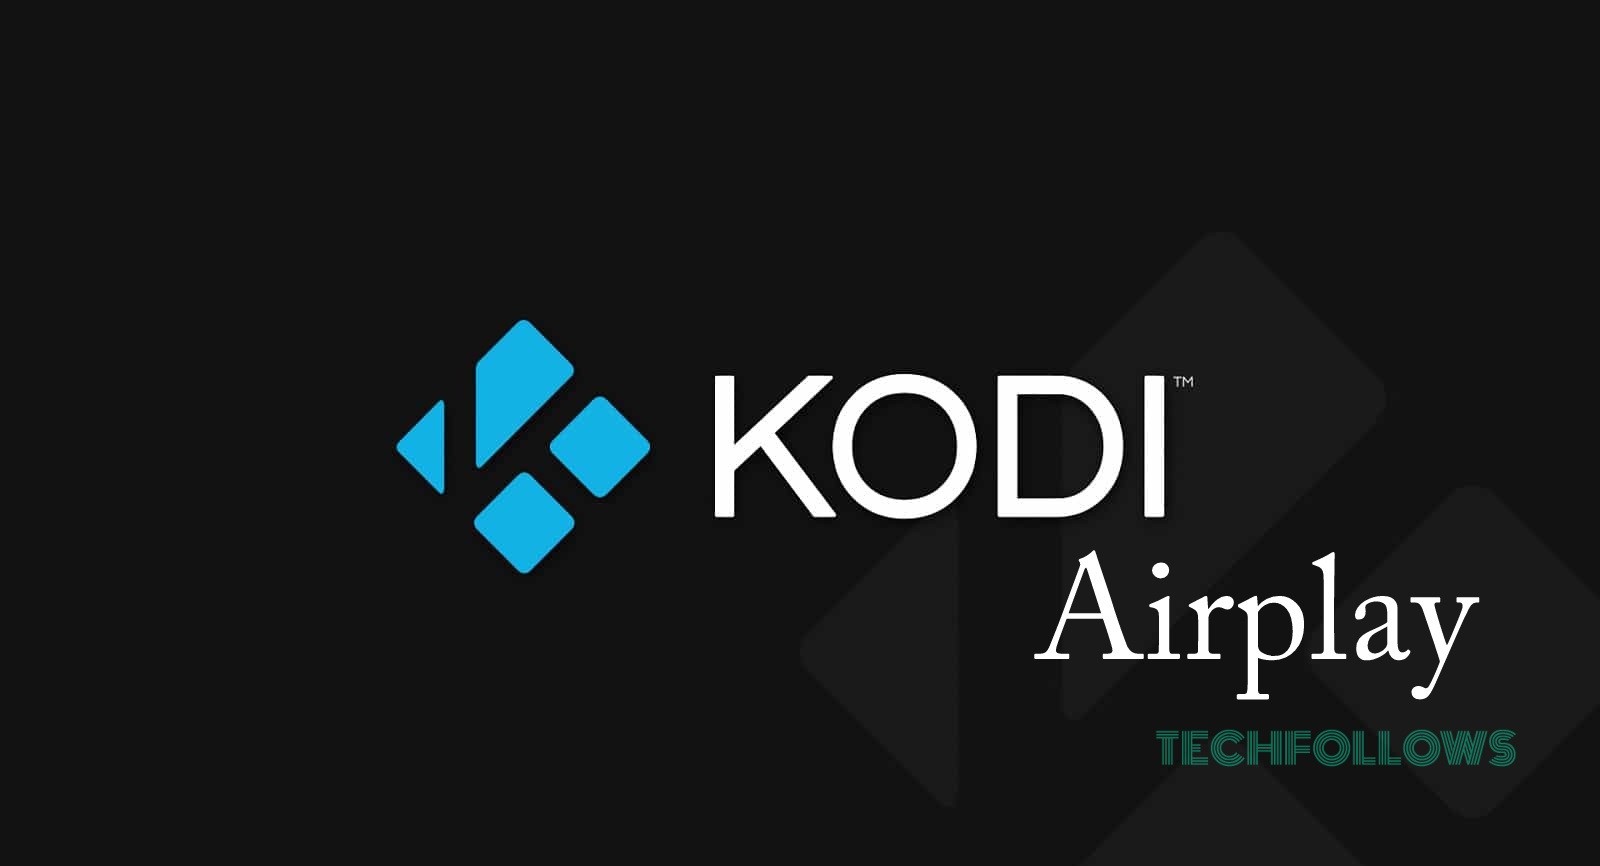 Kodi Airplay